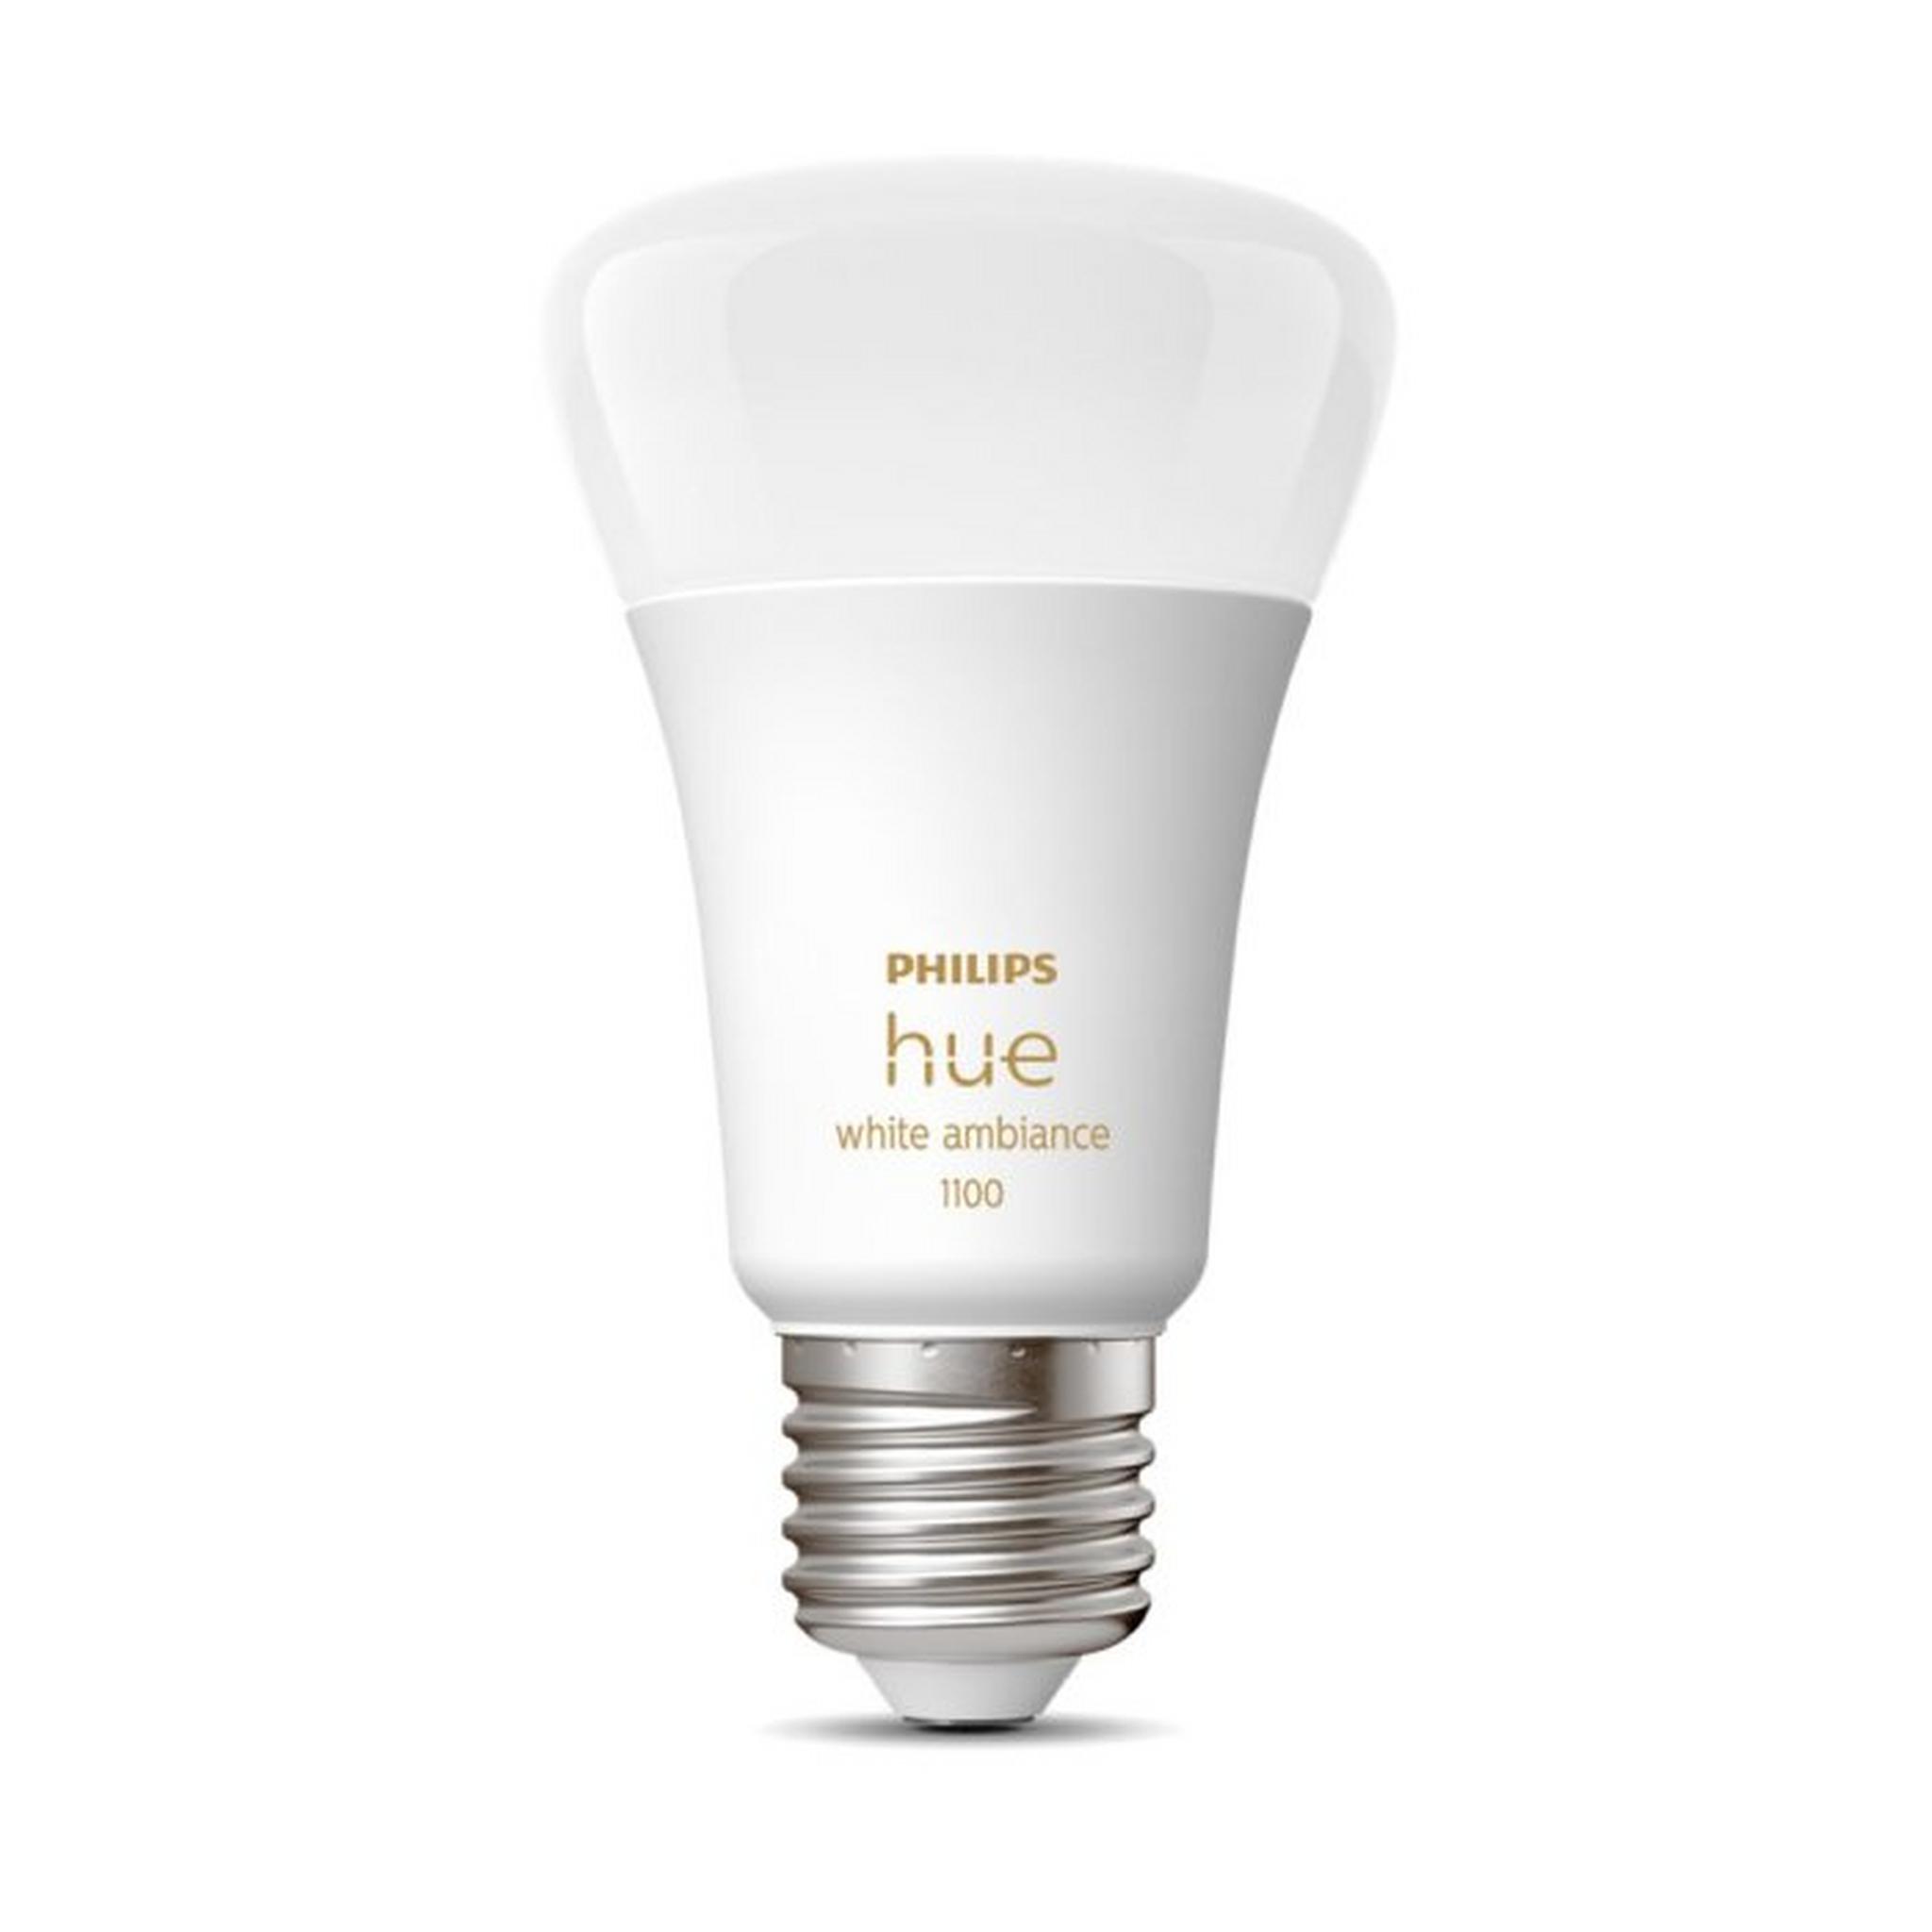 Philips Hue White Ambiance A60 E27 Smart Bulb, 11-Watt, 1100 Lumen, 929002468401 – White